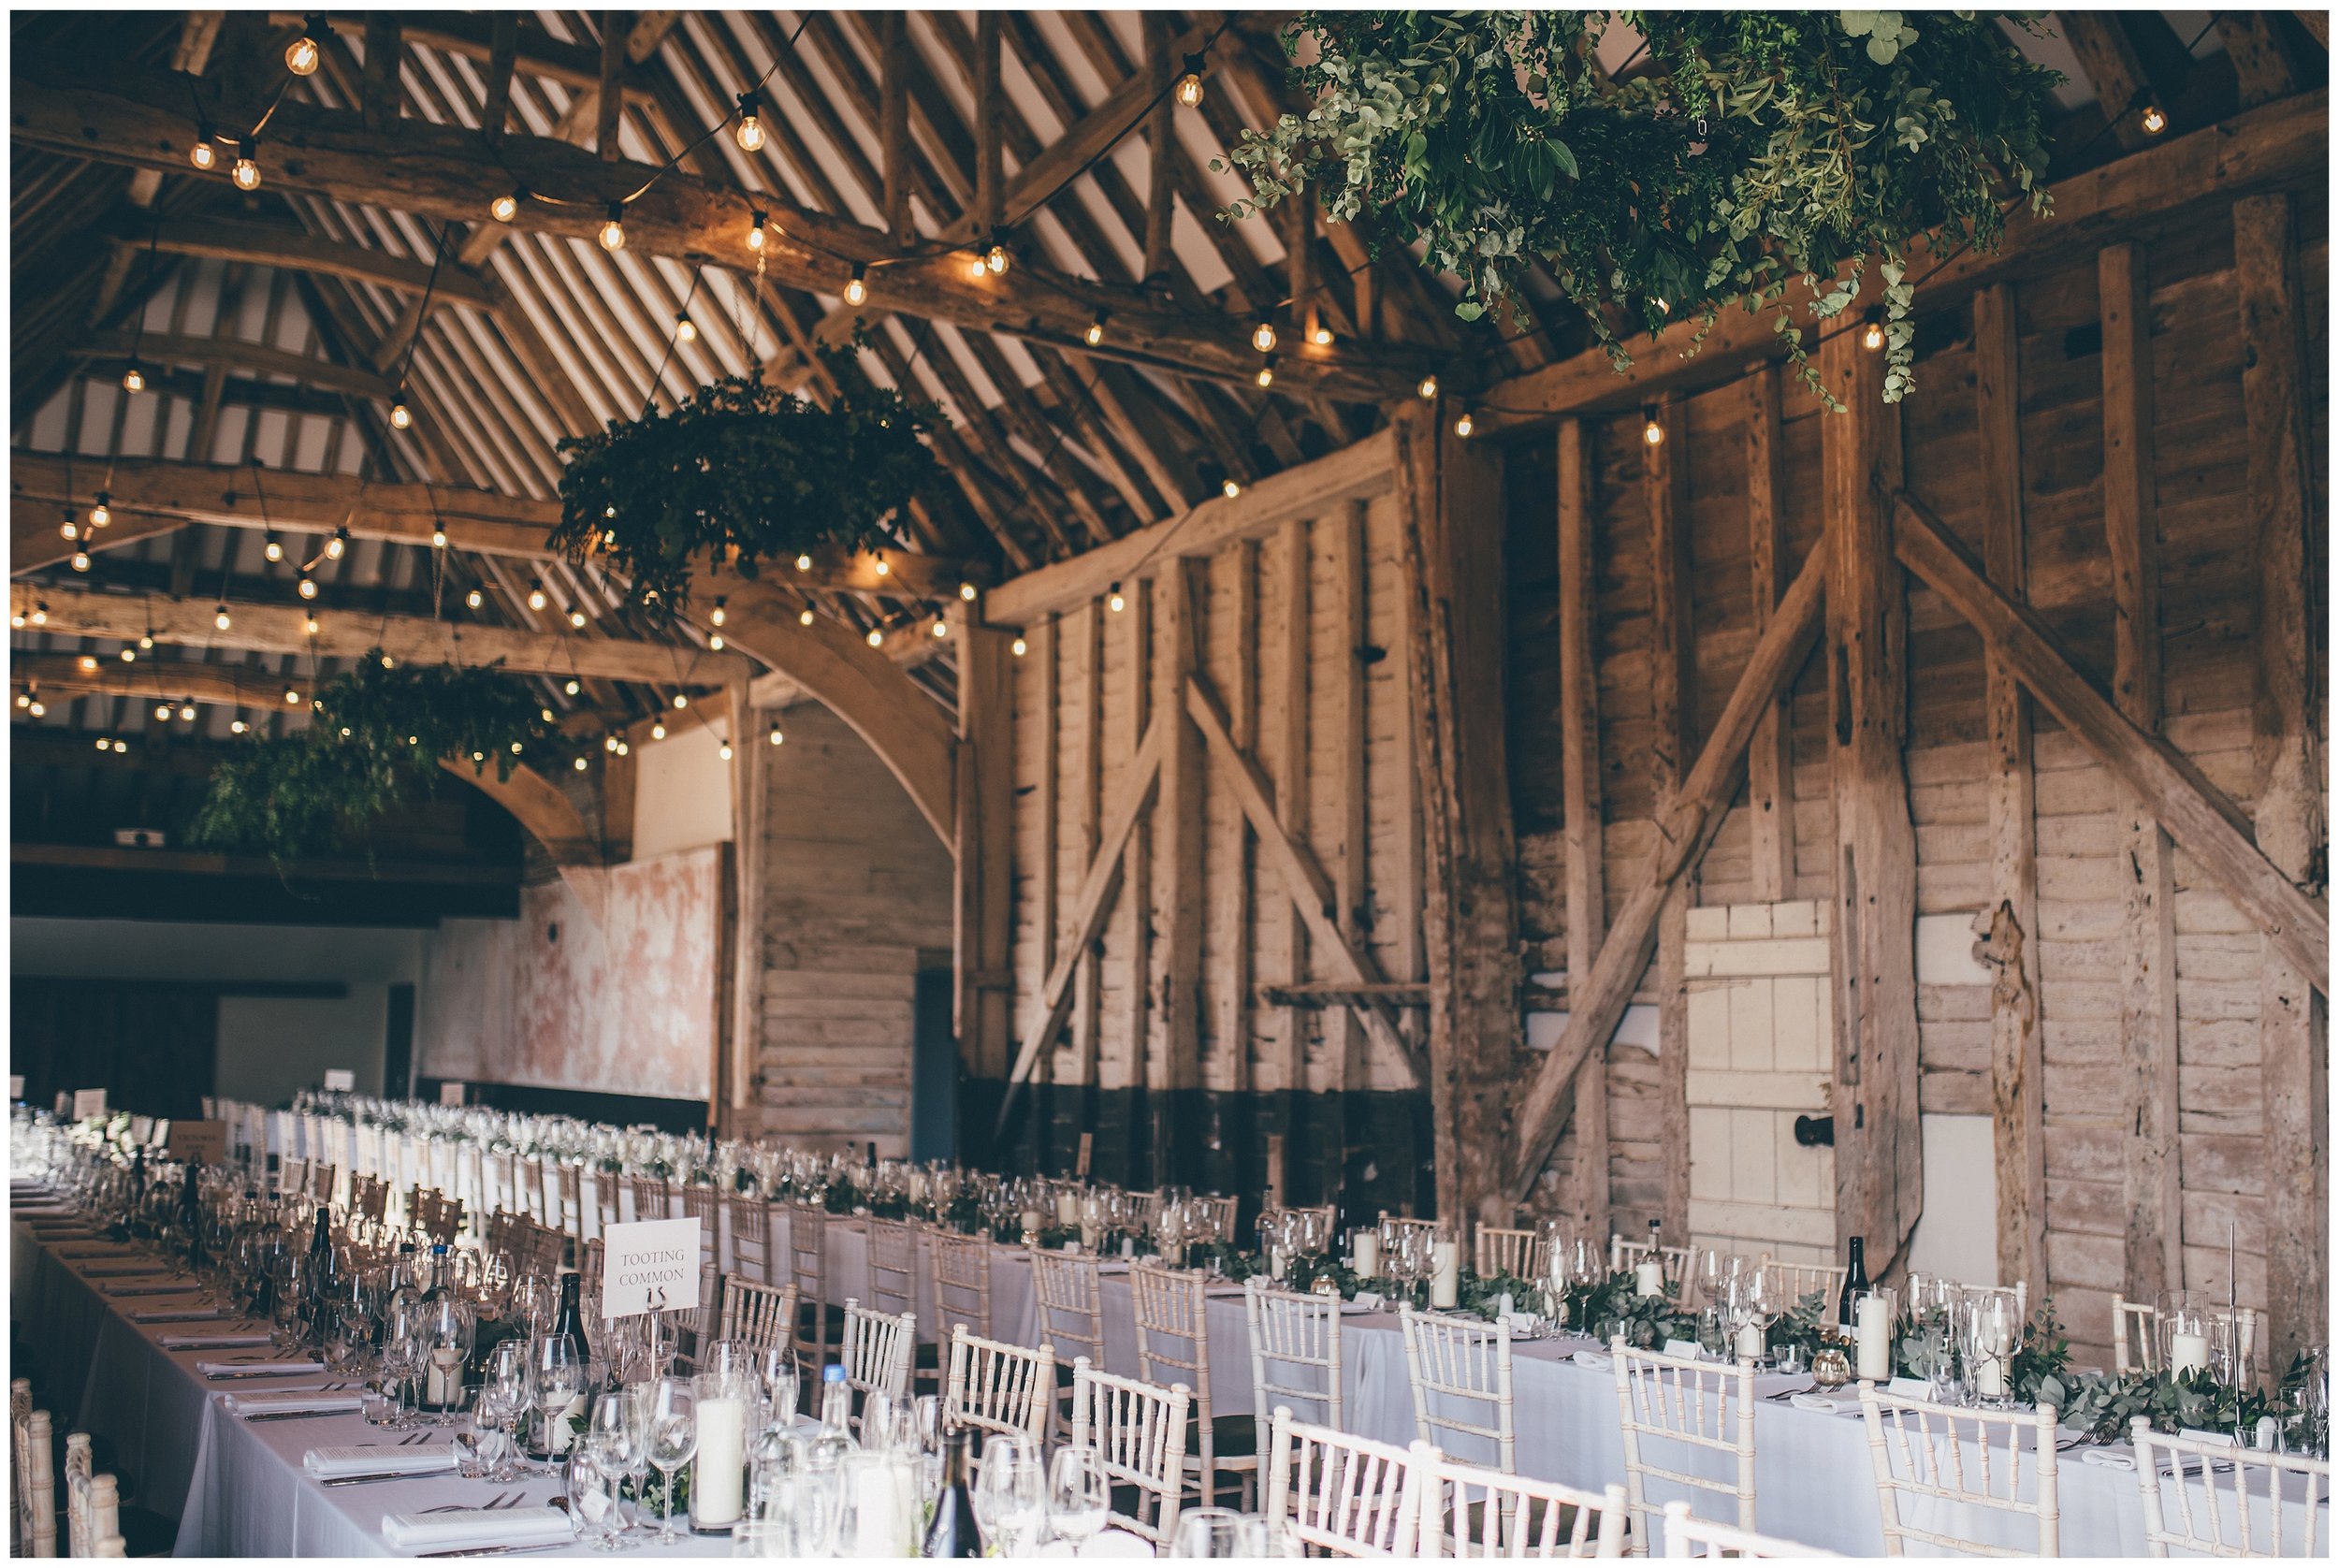 Stunning table details at Henham Park wedding barns.